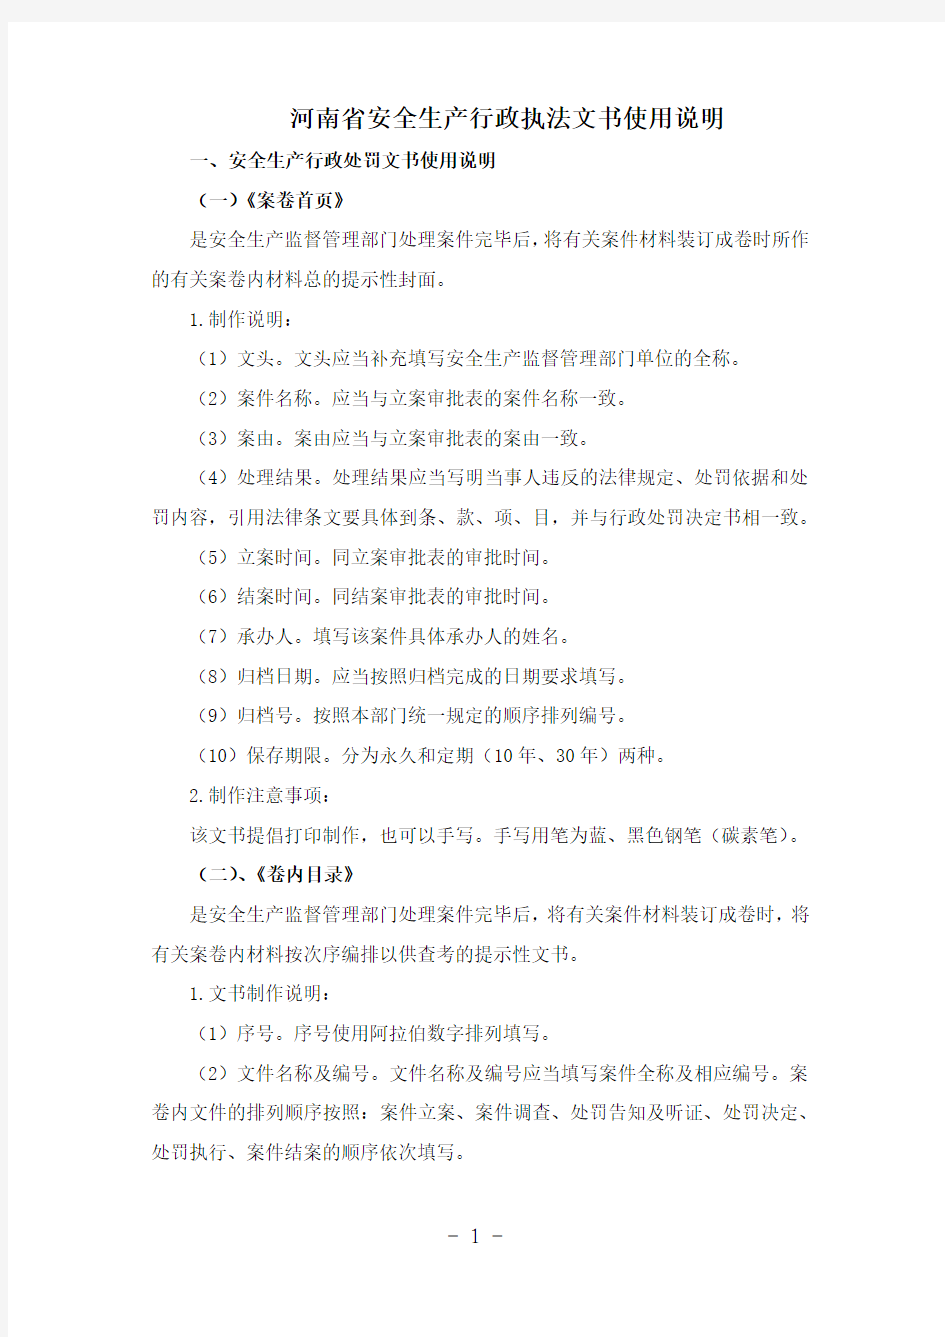 222河南省安全生产行政执法文书使用说明(发布)